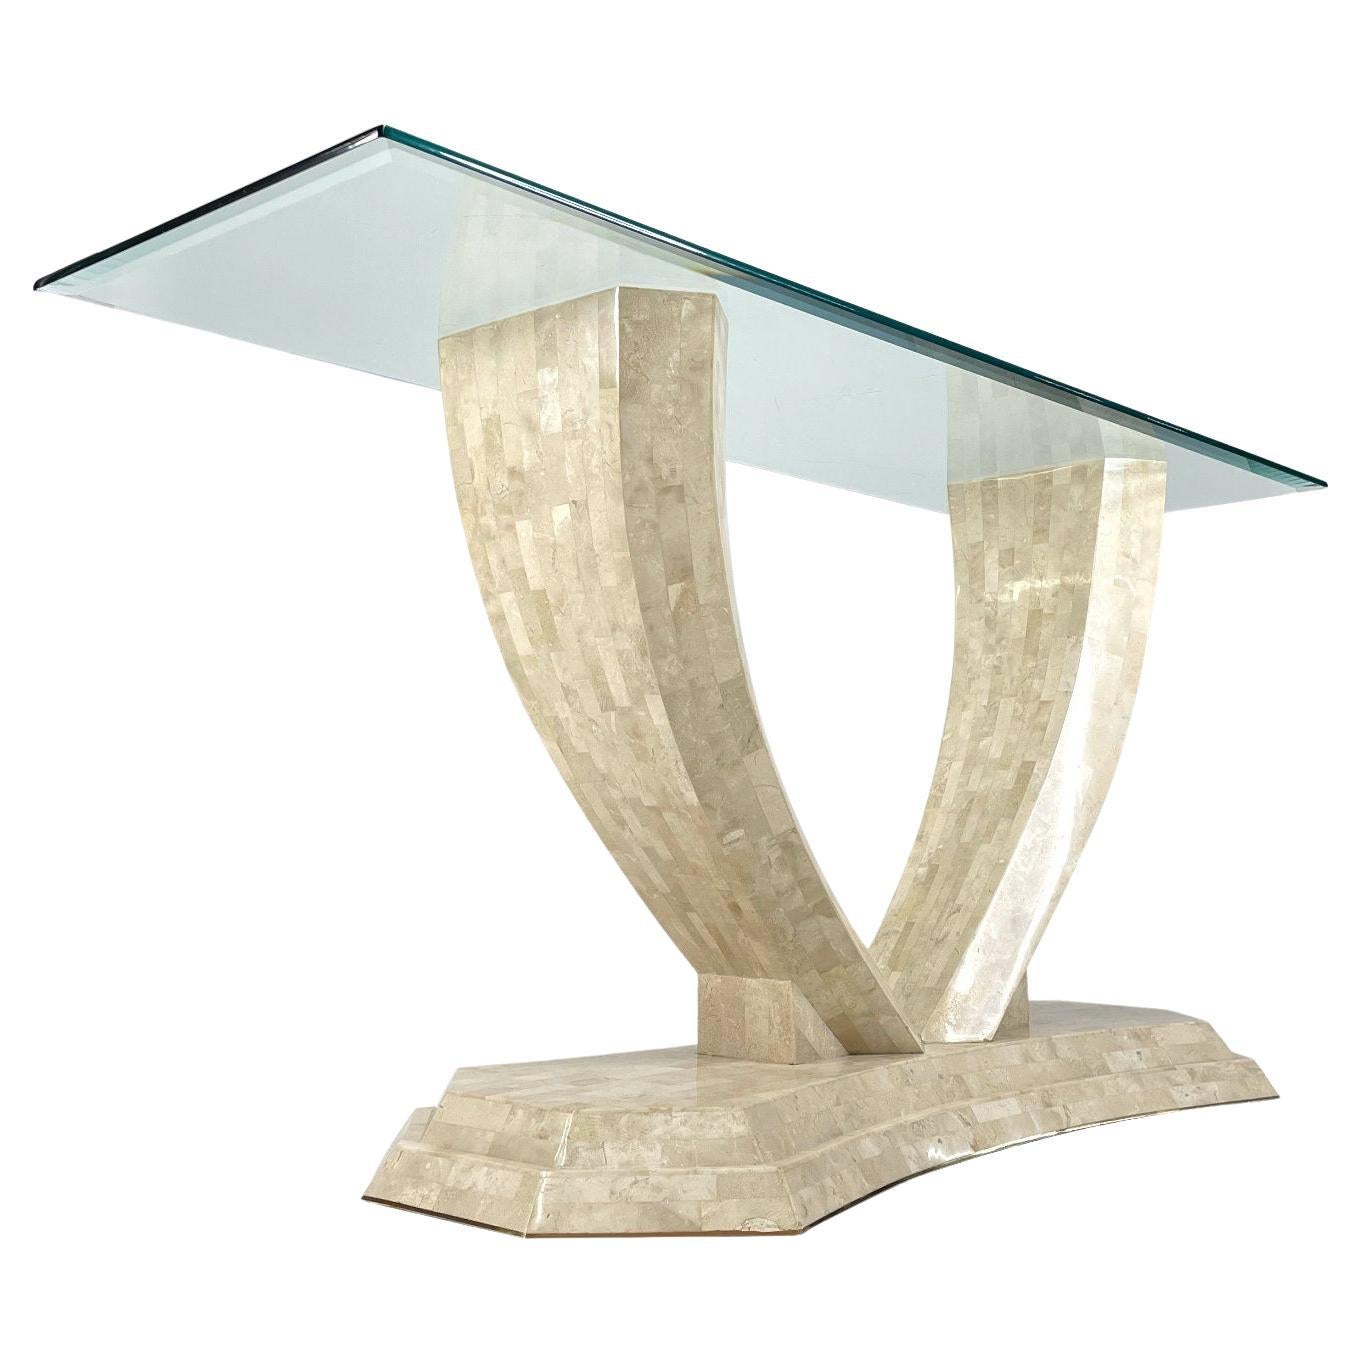 Table console en pierre tessellée arquée de Robert Marcius pour Maitland Smith. Cette table de canapé élégamment arquée est parfaite pour une entrée ou derrière un canapé, comme son nom l'indique. Cette pièce est particulièrement exquise, fabriquée